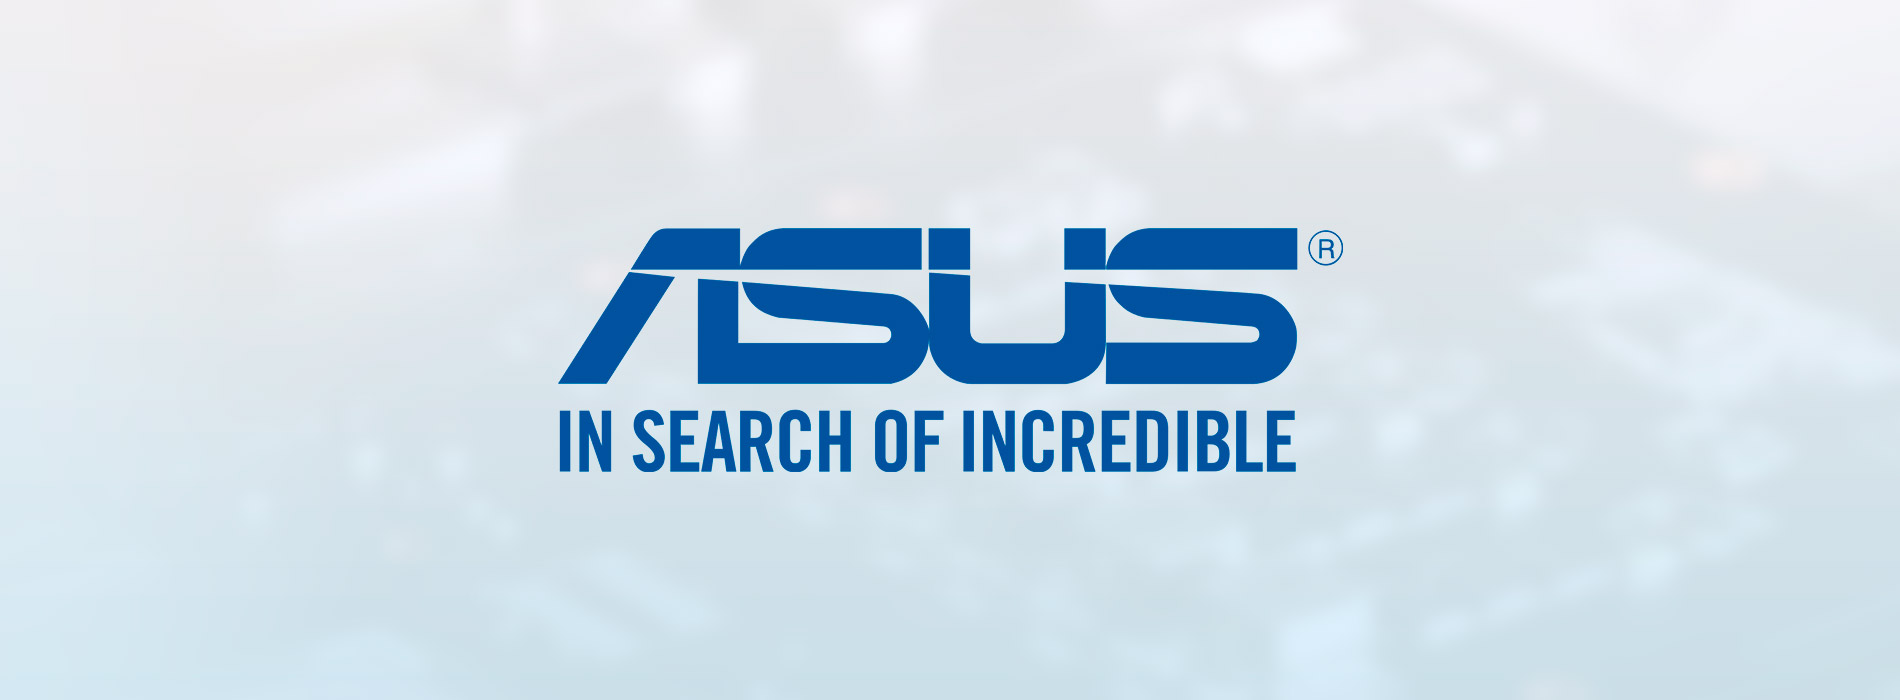 Conheça a história da Asus! Gigante da tecnologia que começou fabricando placas-mãe